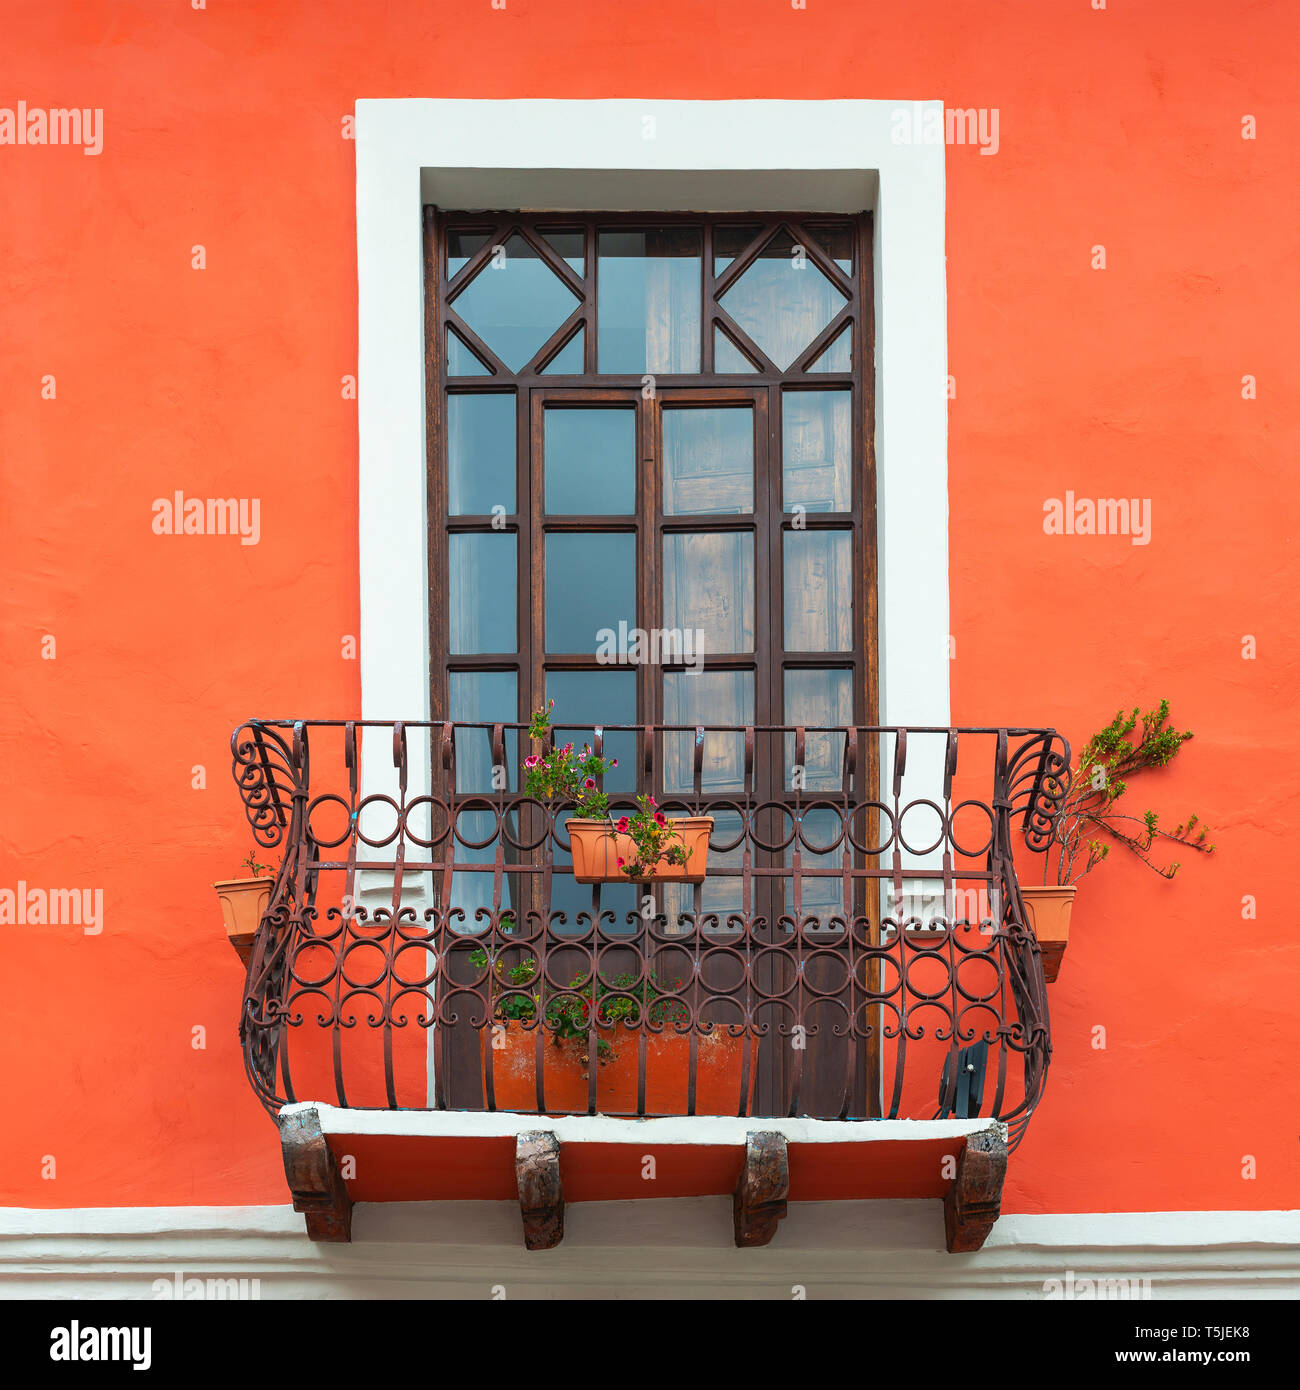 Balcon de style colonial avec fenêtre et ton orange corail vivant façade mur dans le centre-ville historique de Cuenca, Équateur. Banque D'Images